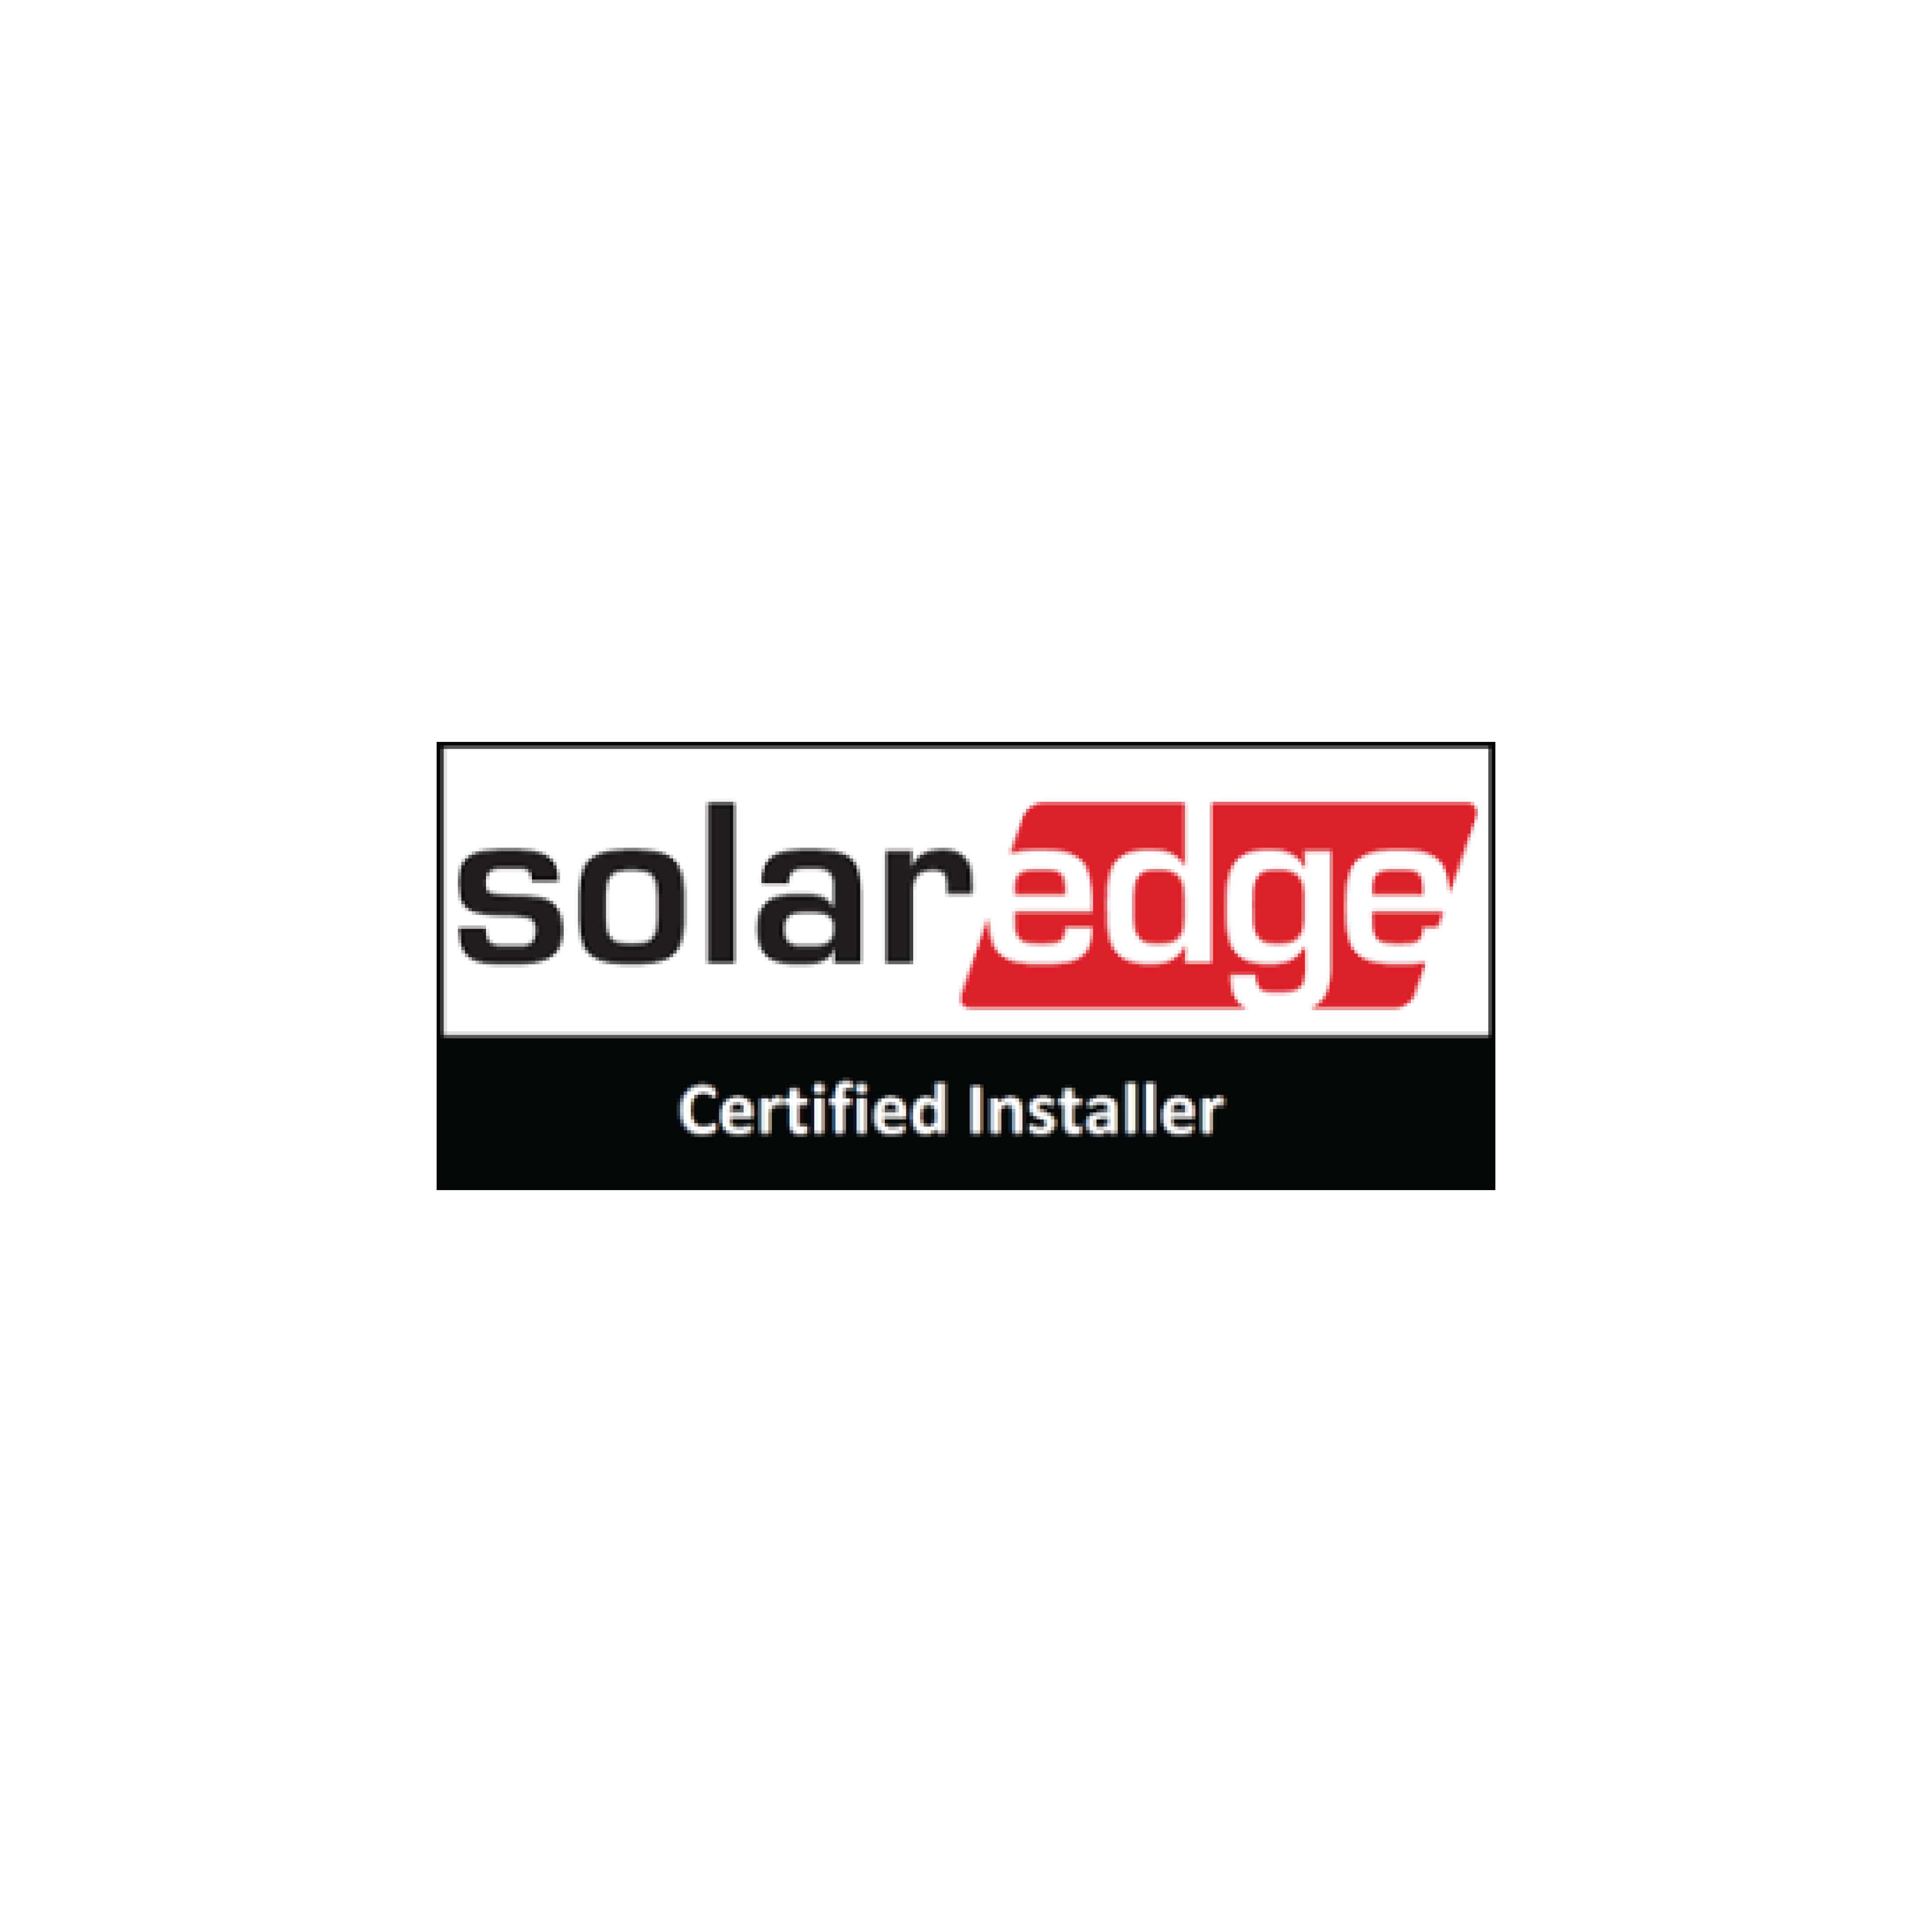 Solar Edge Certified Installer